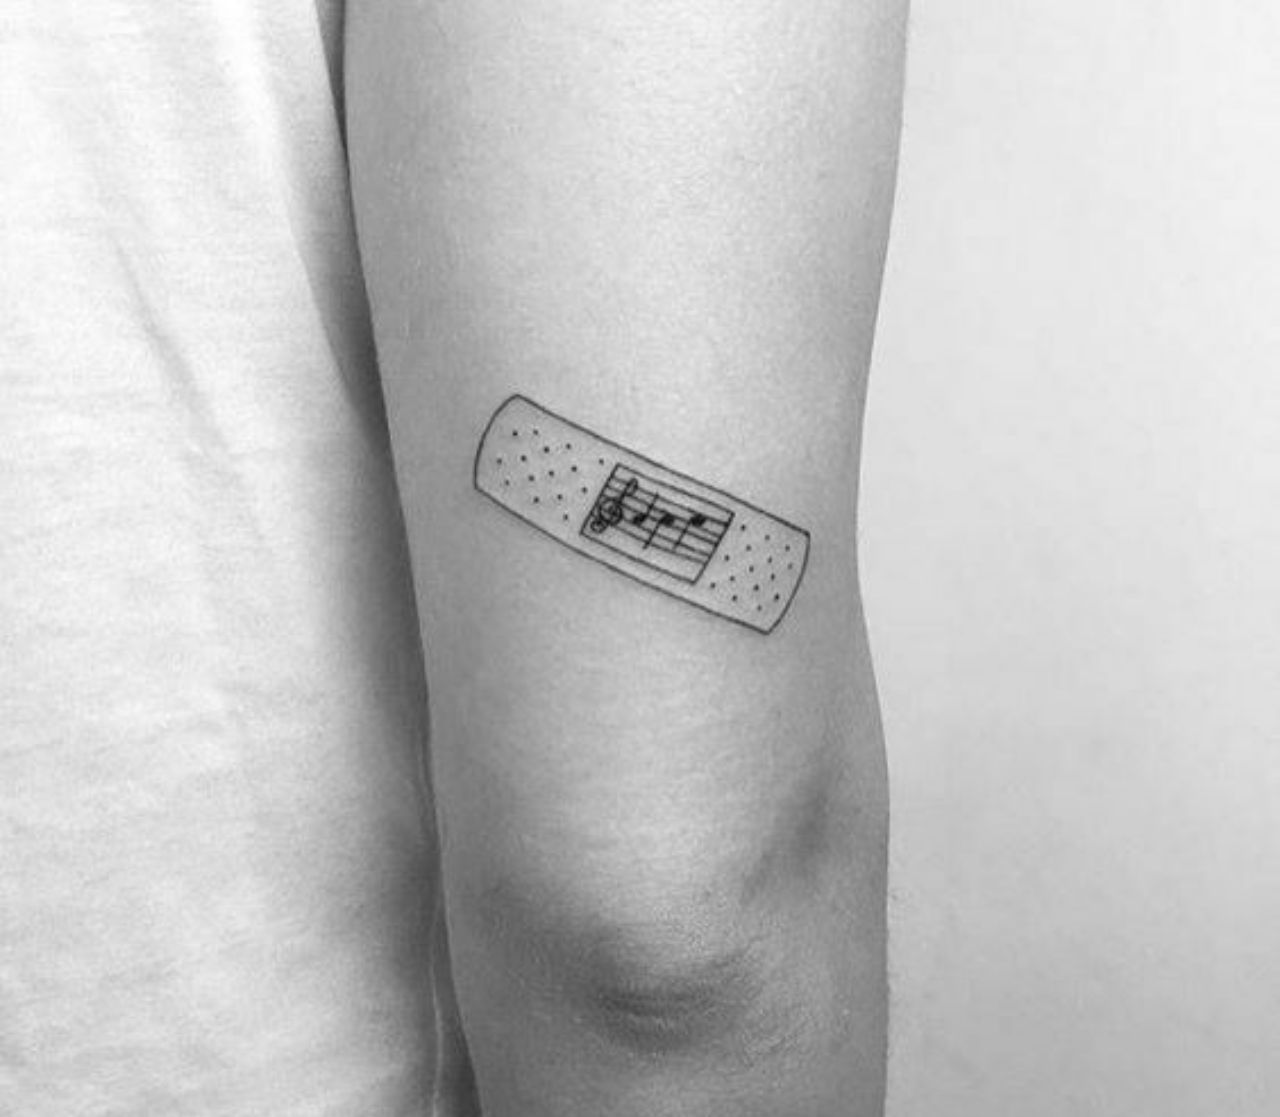 تاتو | Tattoos 